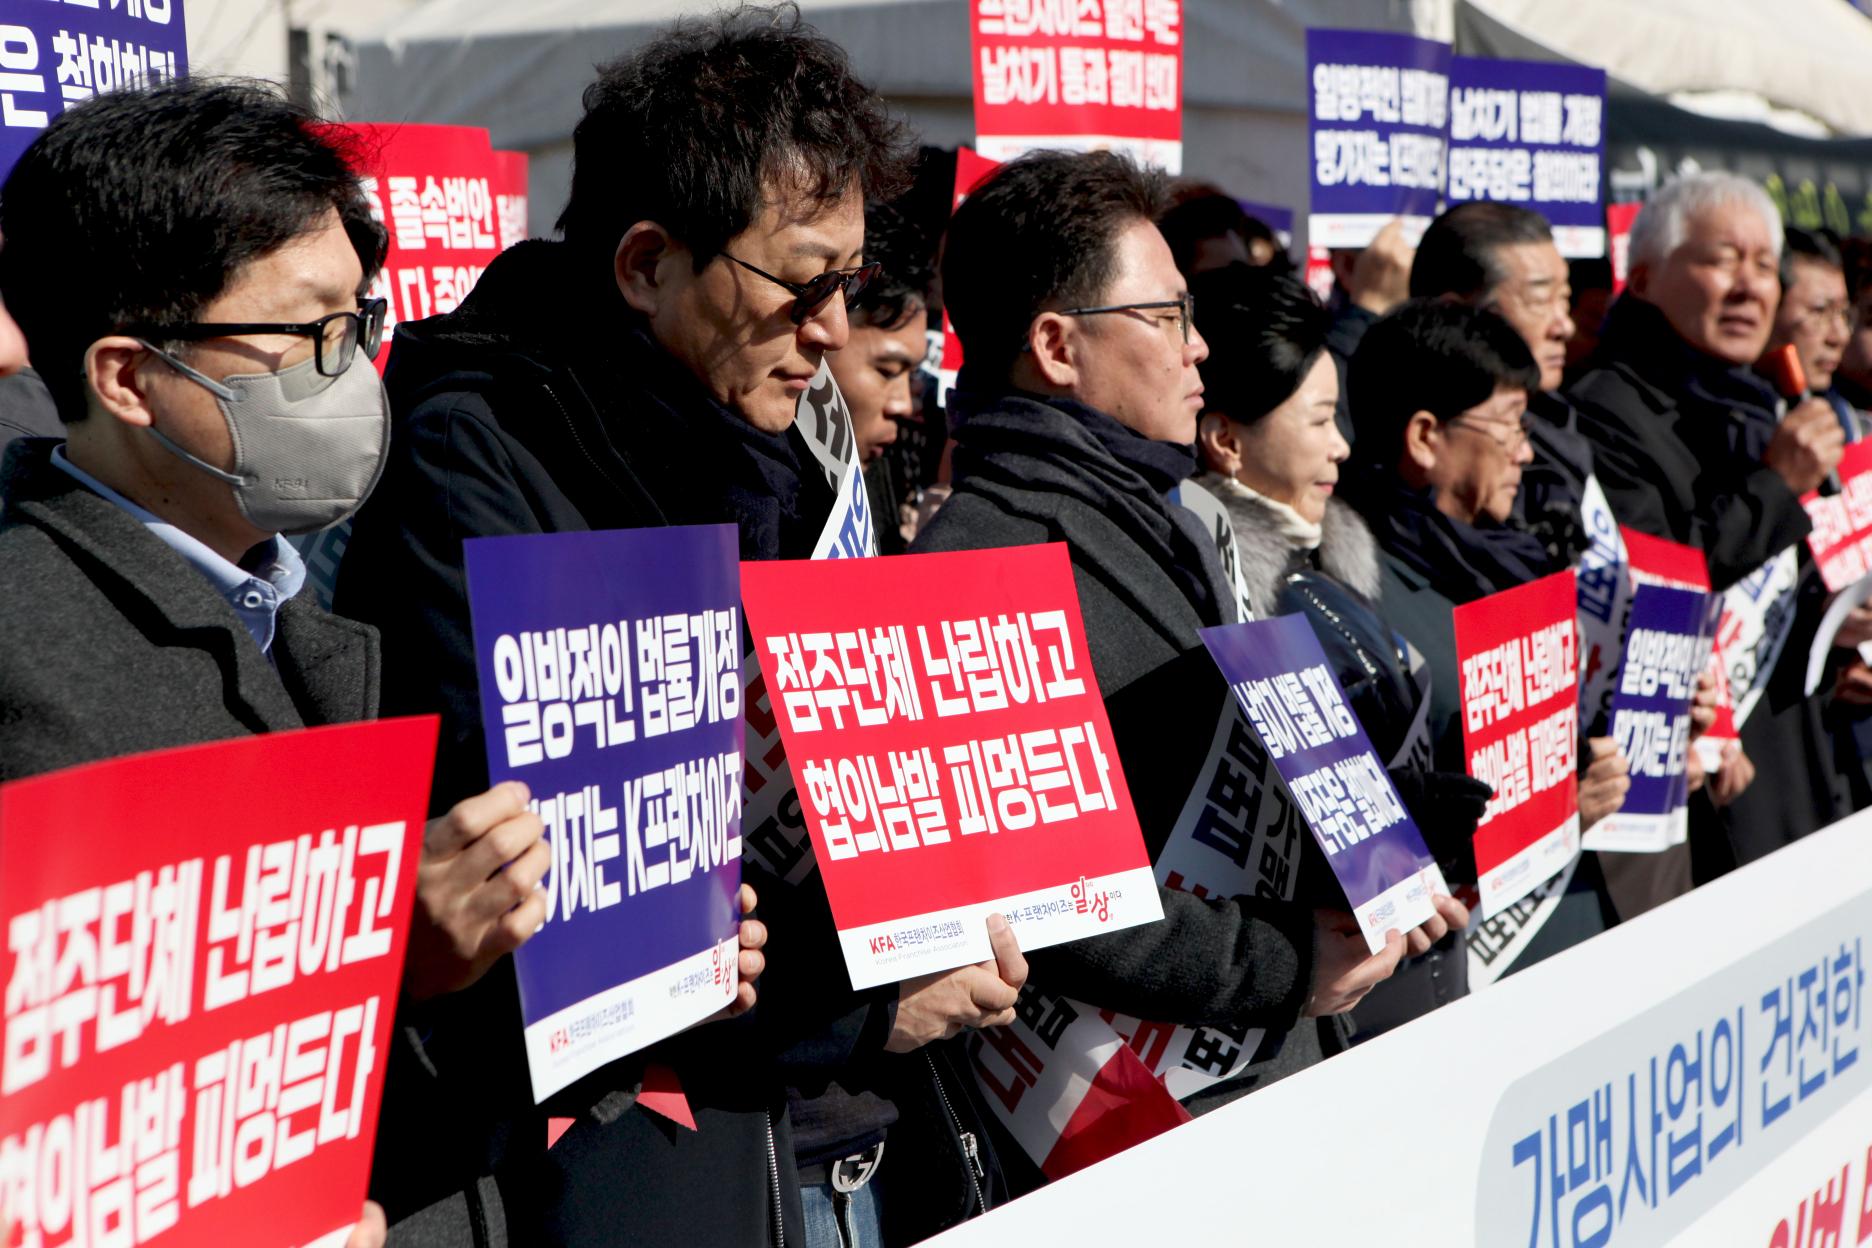 한국프랜차이즈산업협회가 개최한 '가맹사업법' 개정안 통과 저지를 위한 결의 대회(출처=위즈경제)